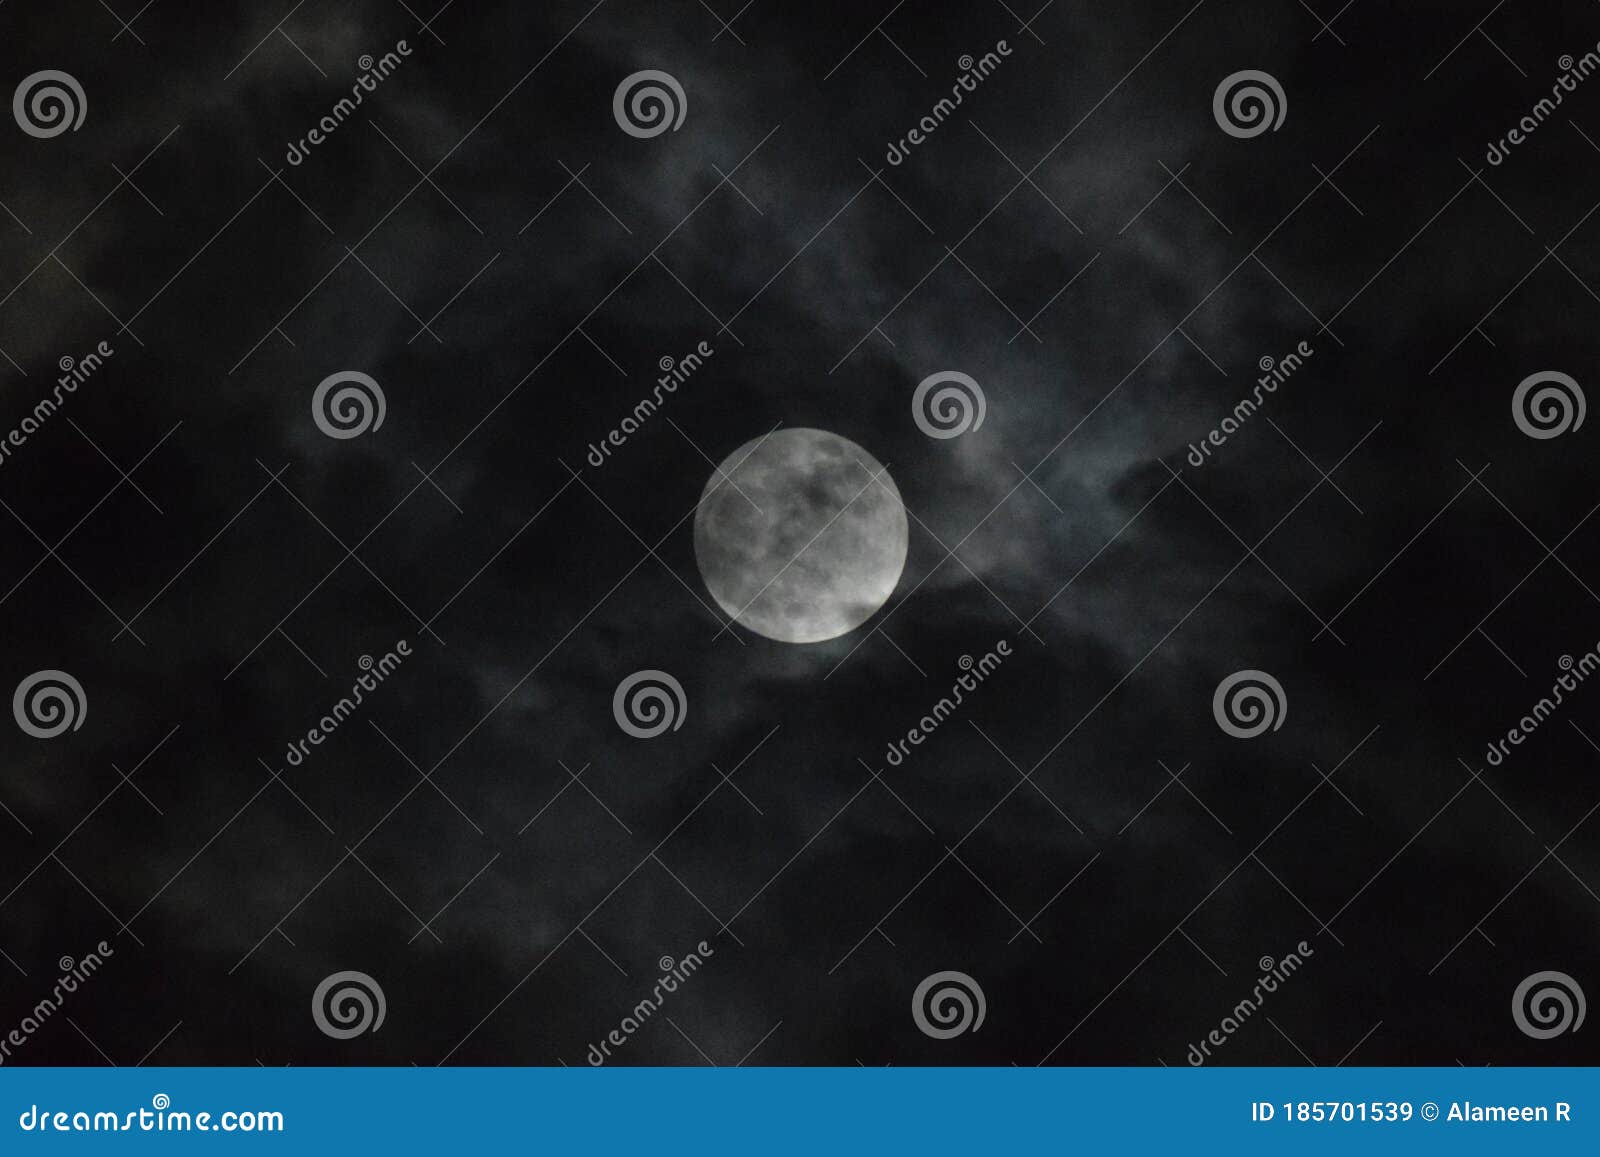 tamil nadu, india - june-06-2020: penumbral lunar eclipse behind clouds